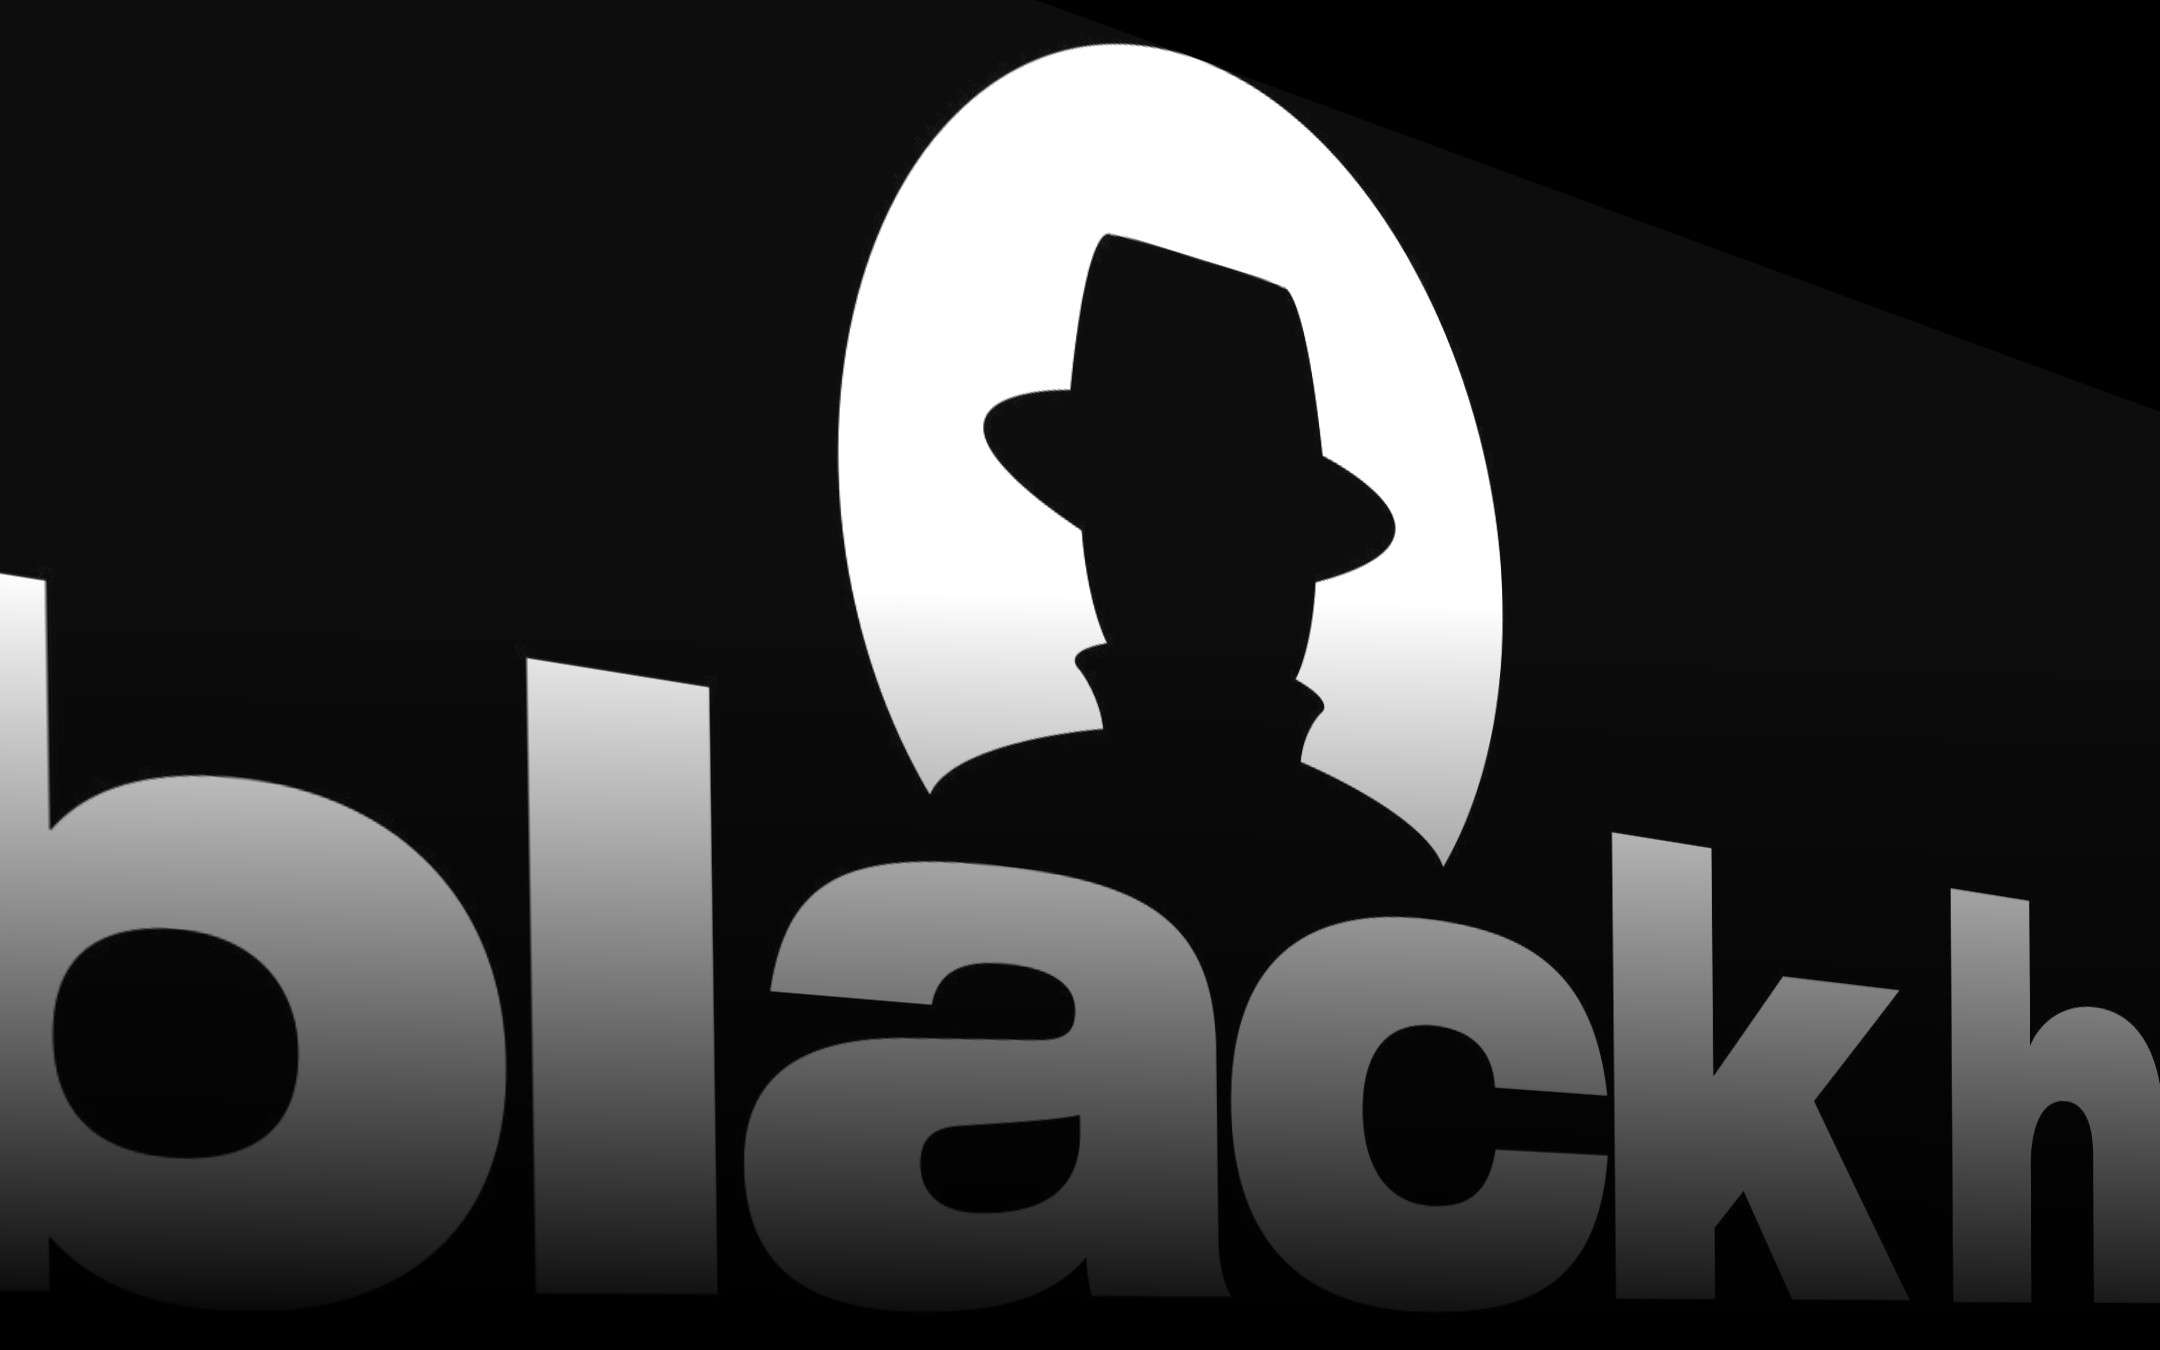 black hat hacking tools